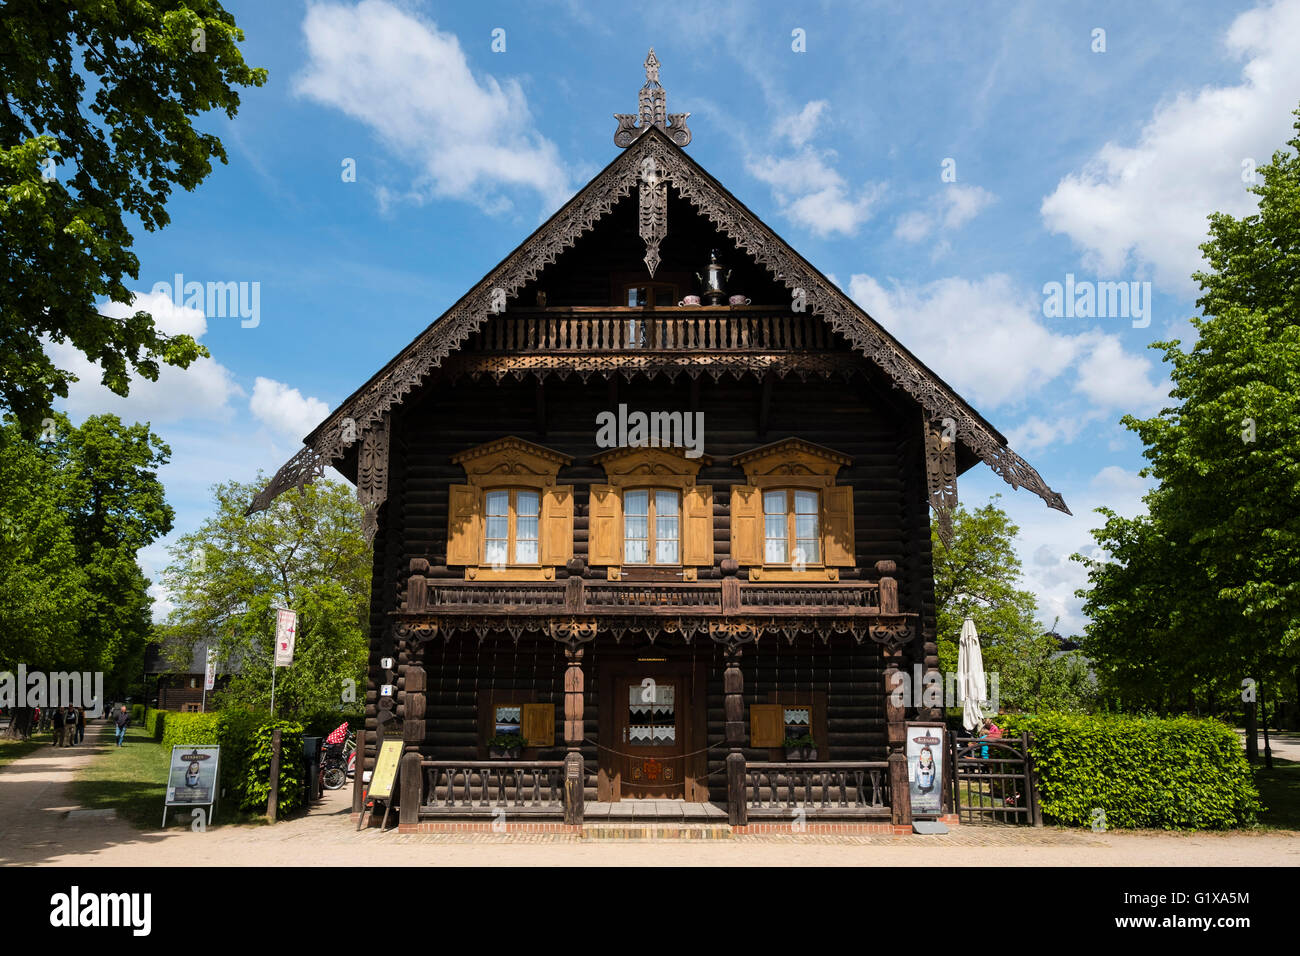 Maison en bois sur l'affichage à l'Russischen Kolonie ( colonie russe Alexandrowka), Potsdam, Brandebourg, Allemagne Banque D'Images